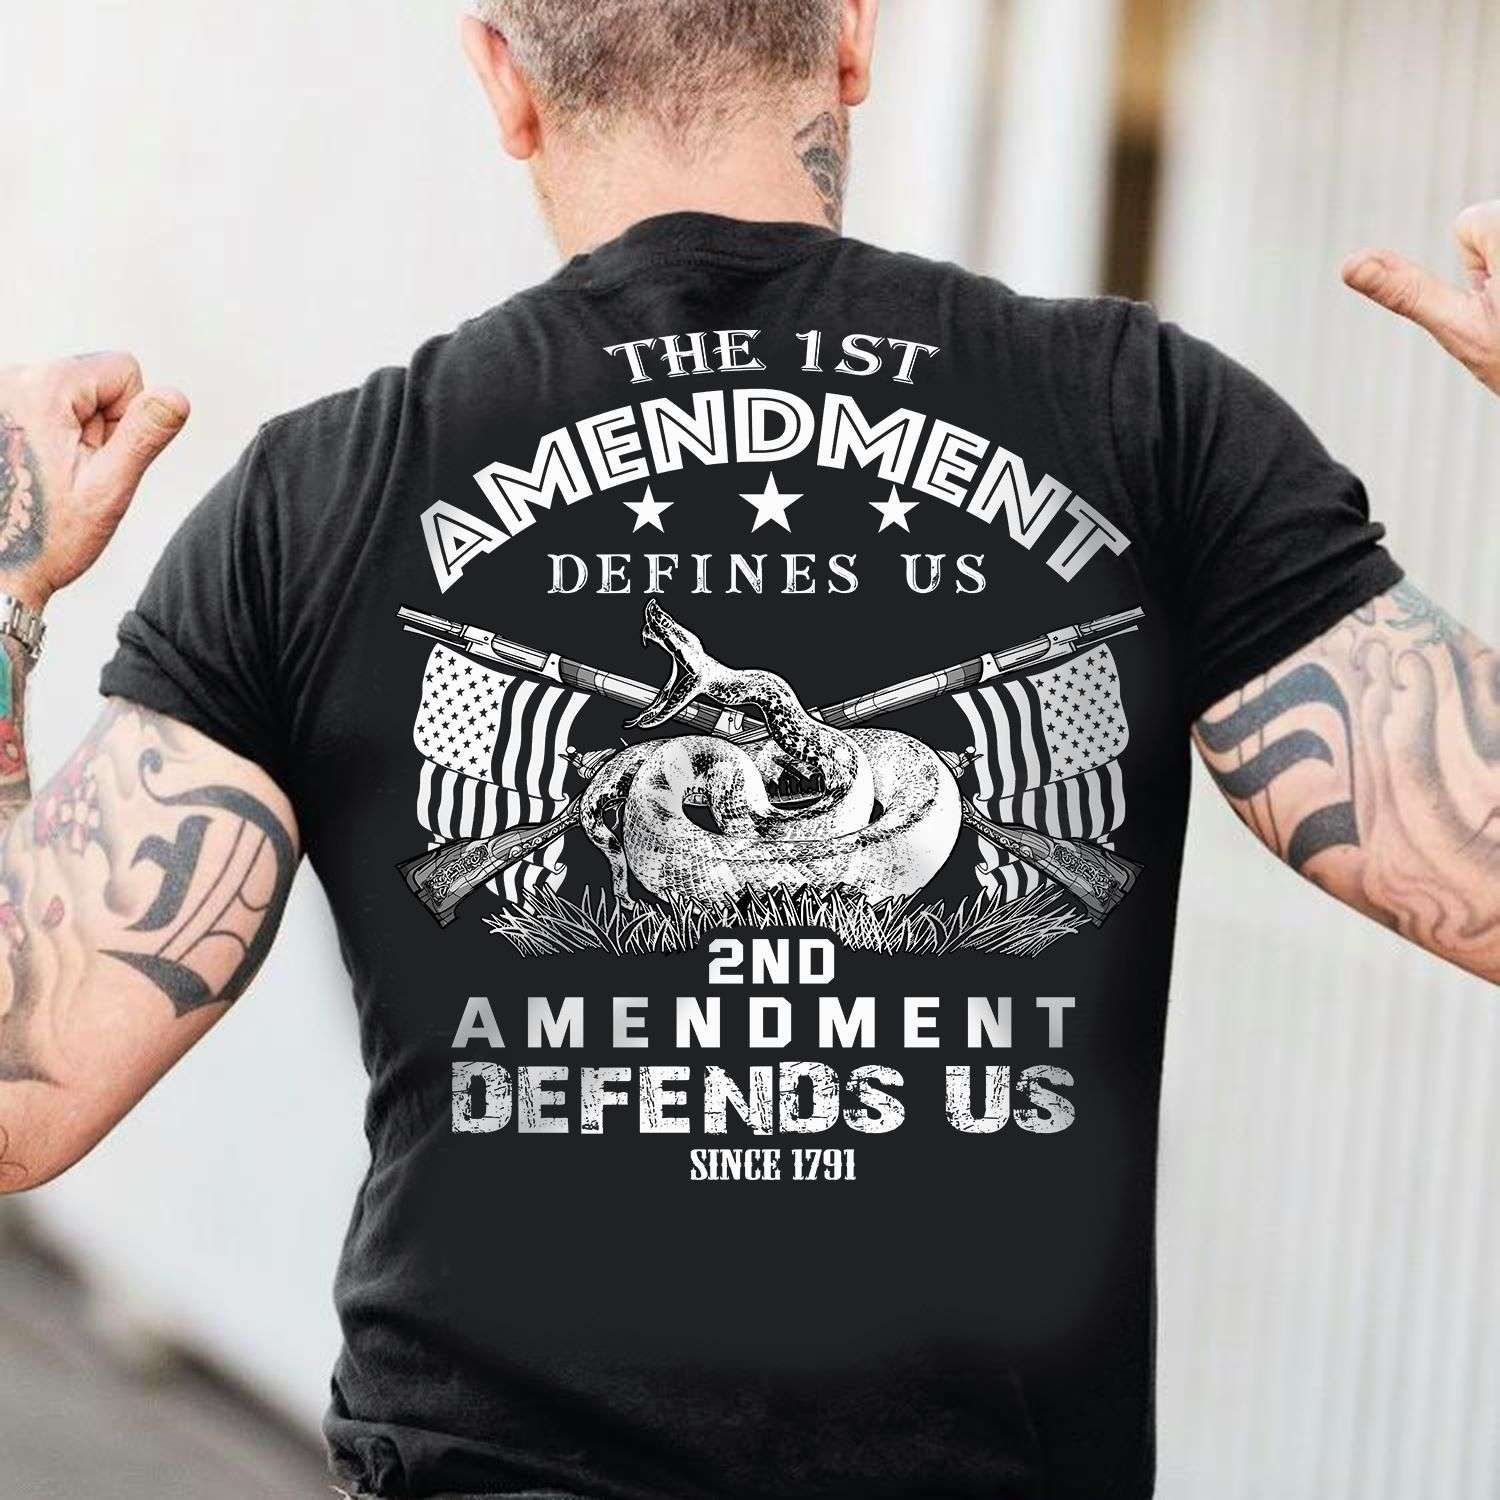 The 1st Amendment defines us 2nd amendment defends us - American veteran